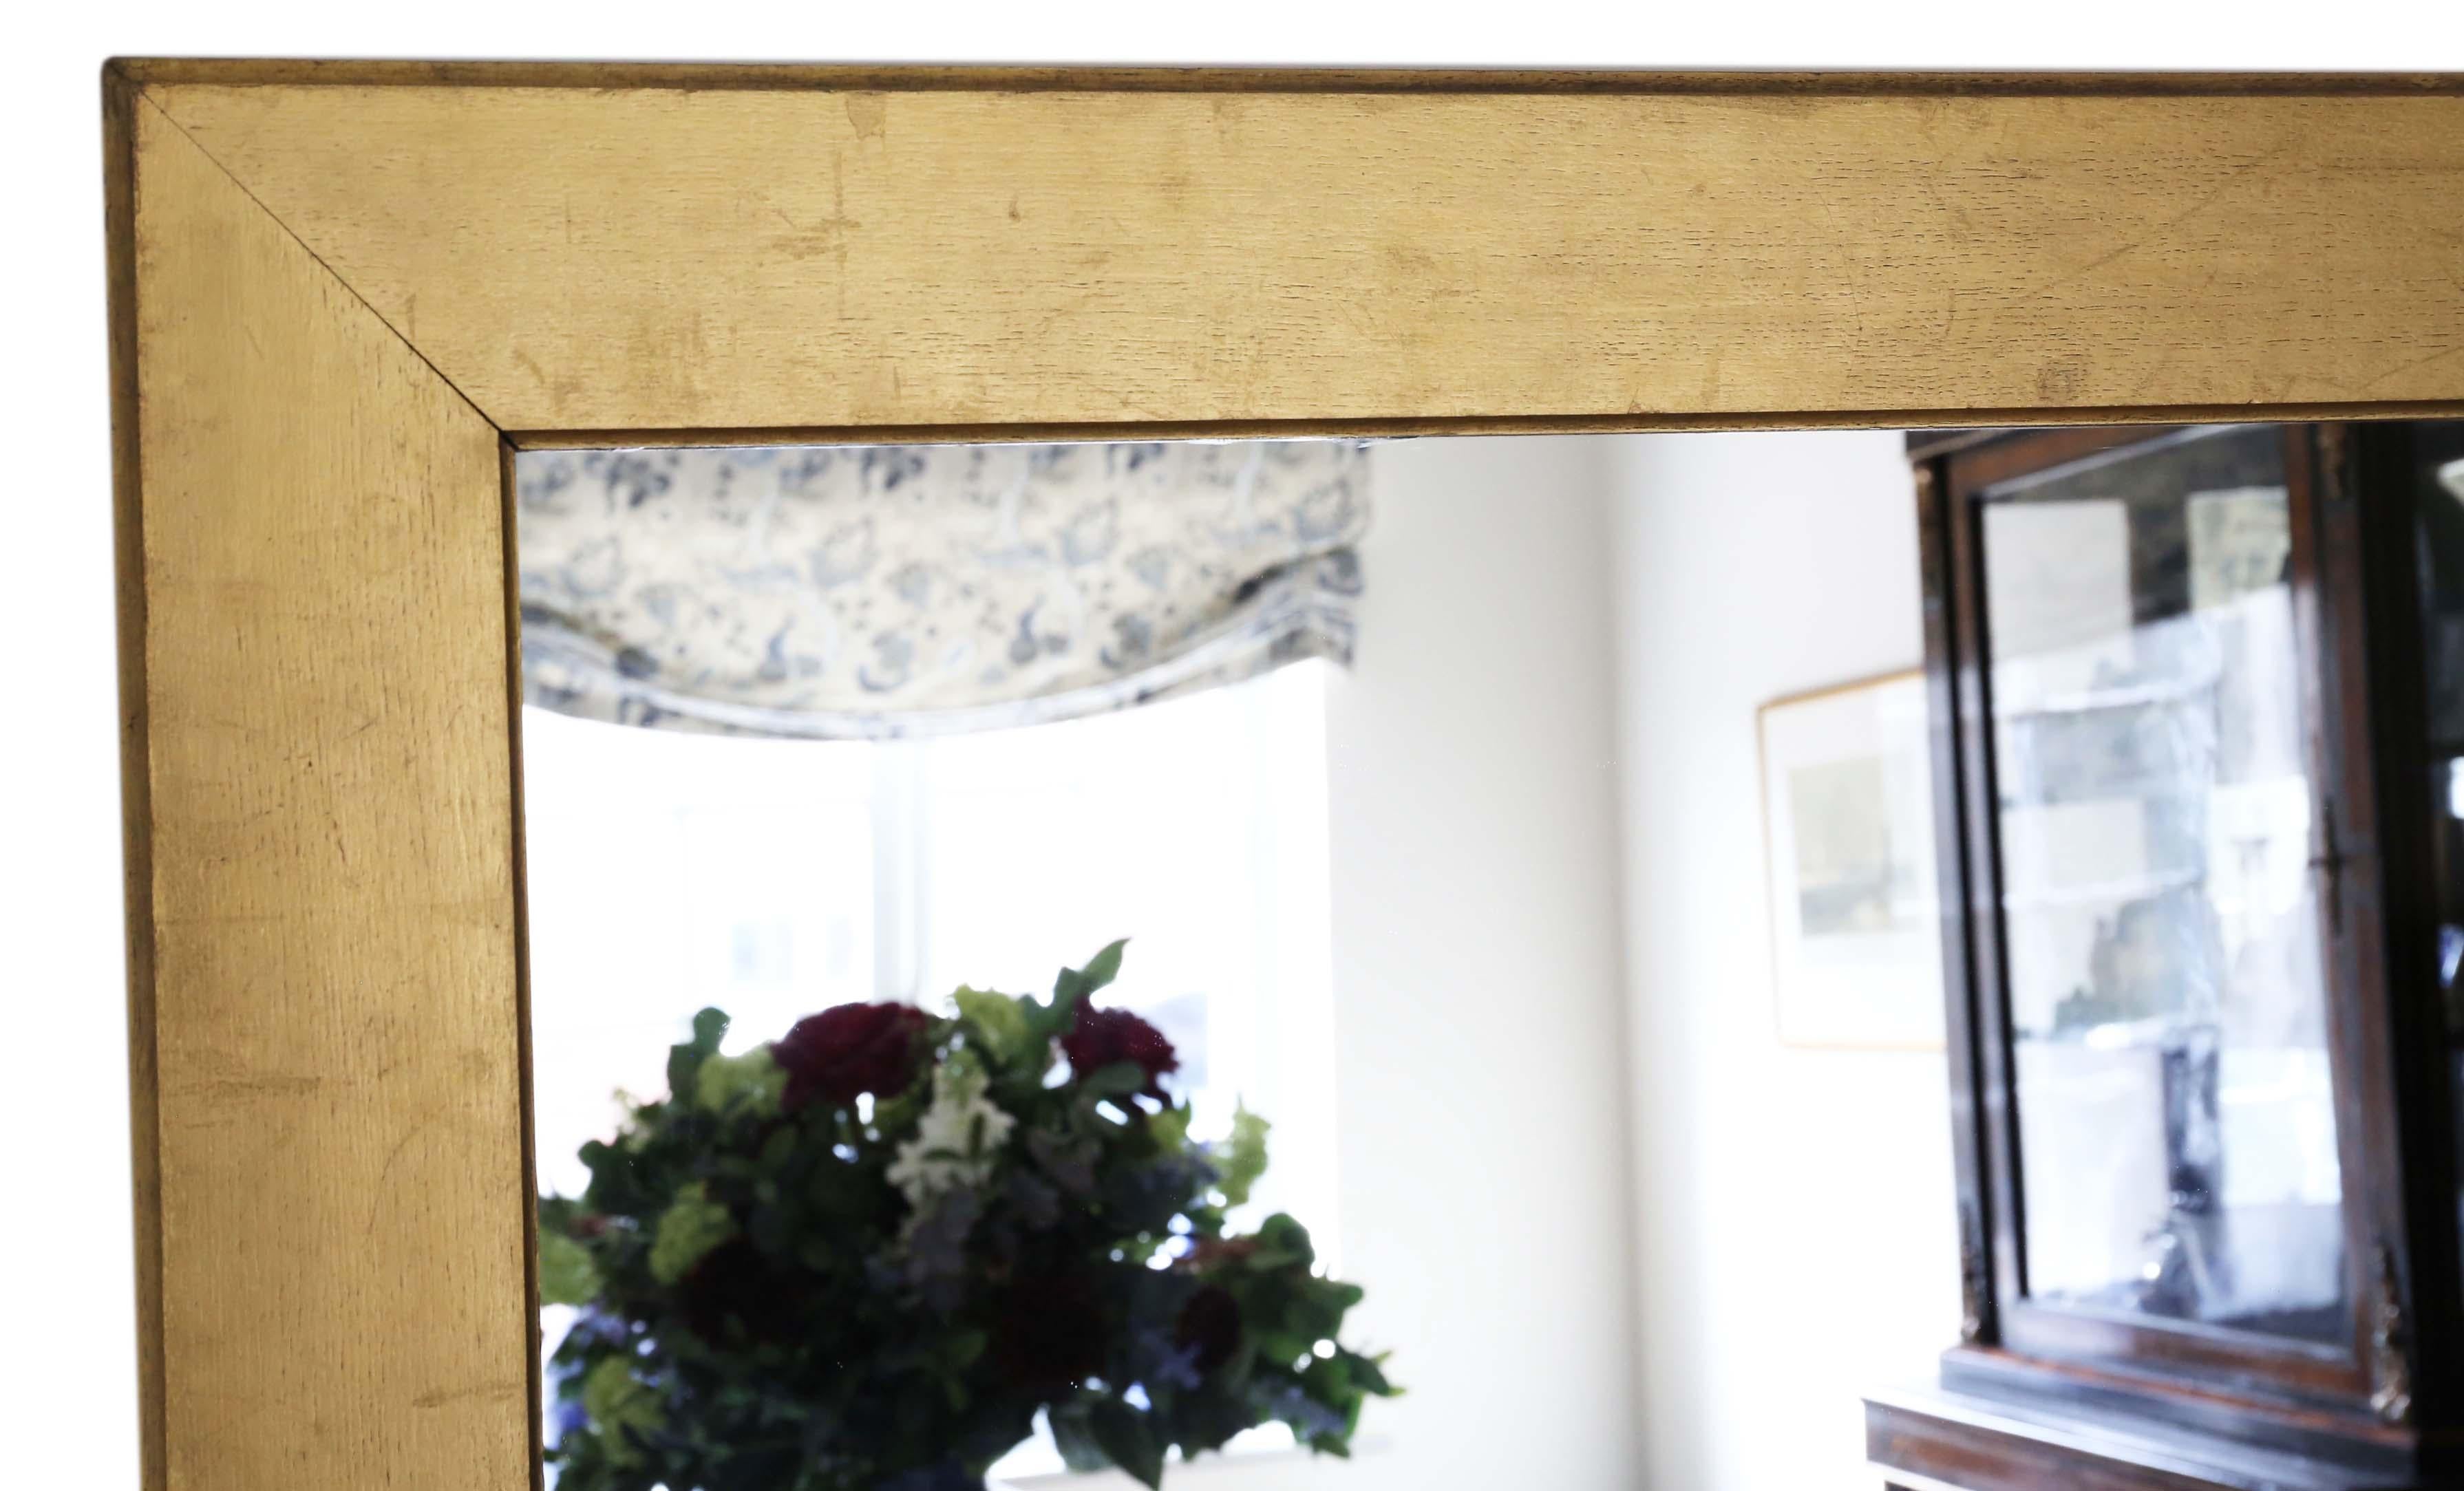 Très grand miroir mural en bois doré de qualité ancienne, datant de la fin du XIXe siècle. Charmant charme et élégance.

C'est un beau et rare miroir. Grand cadre lourd en chêne doré, qui est simple et élégant.

Une trouvaille impressionnante et